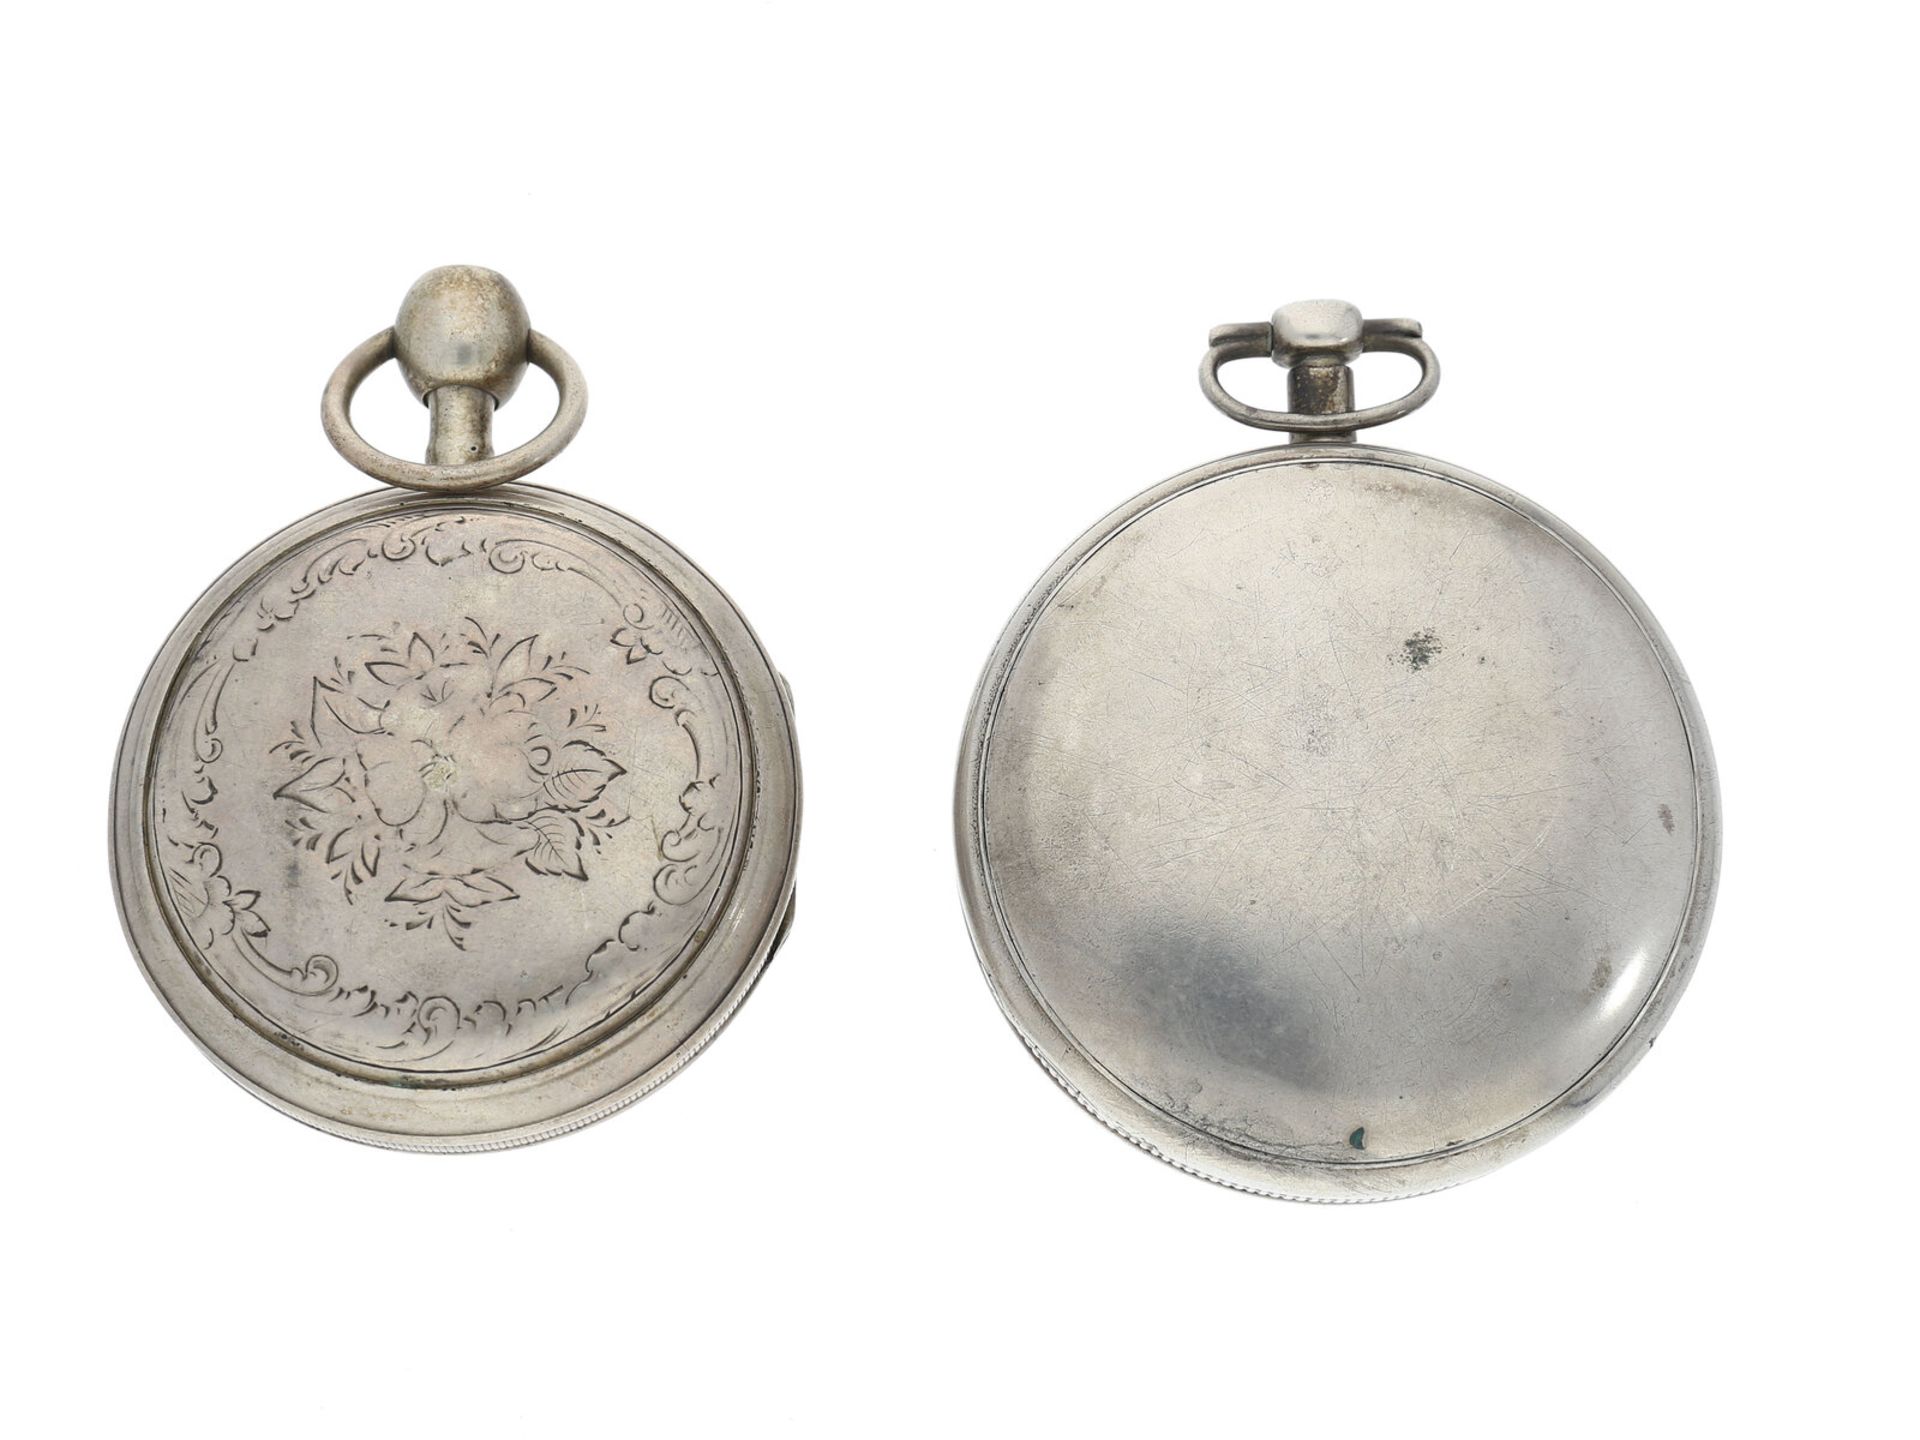 Taschenuhr: 2 silberne Spindeluhren mit Repetition, ca.1800, 1. Ca. Ø57mm, ca. 130g, - Bild 3 aus 3